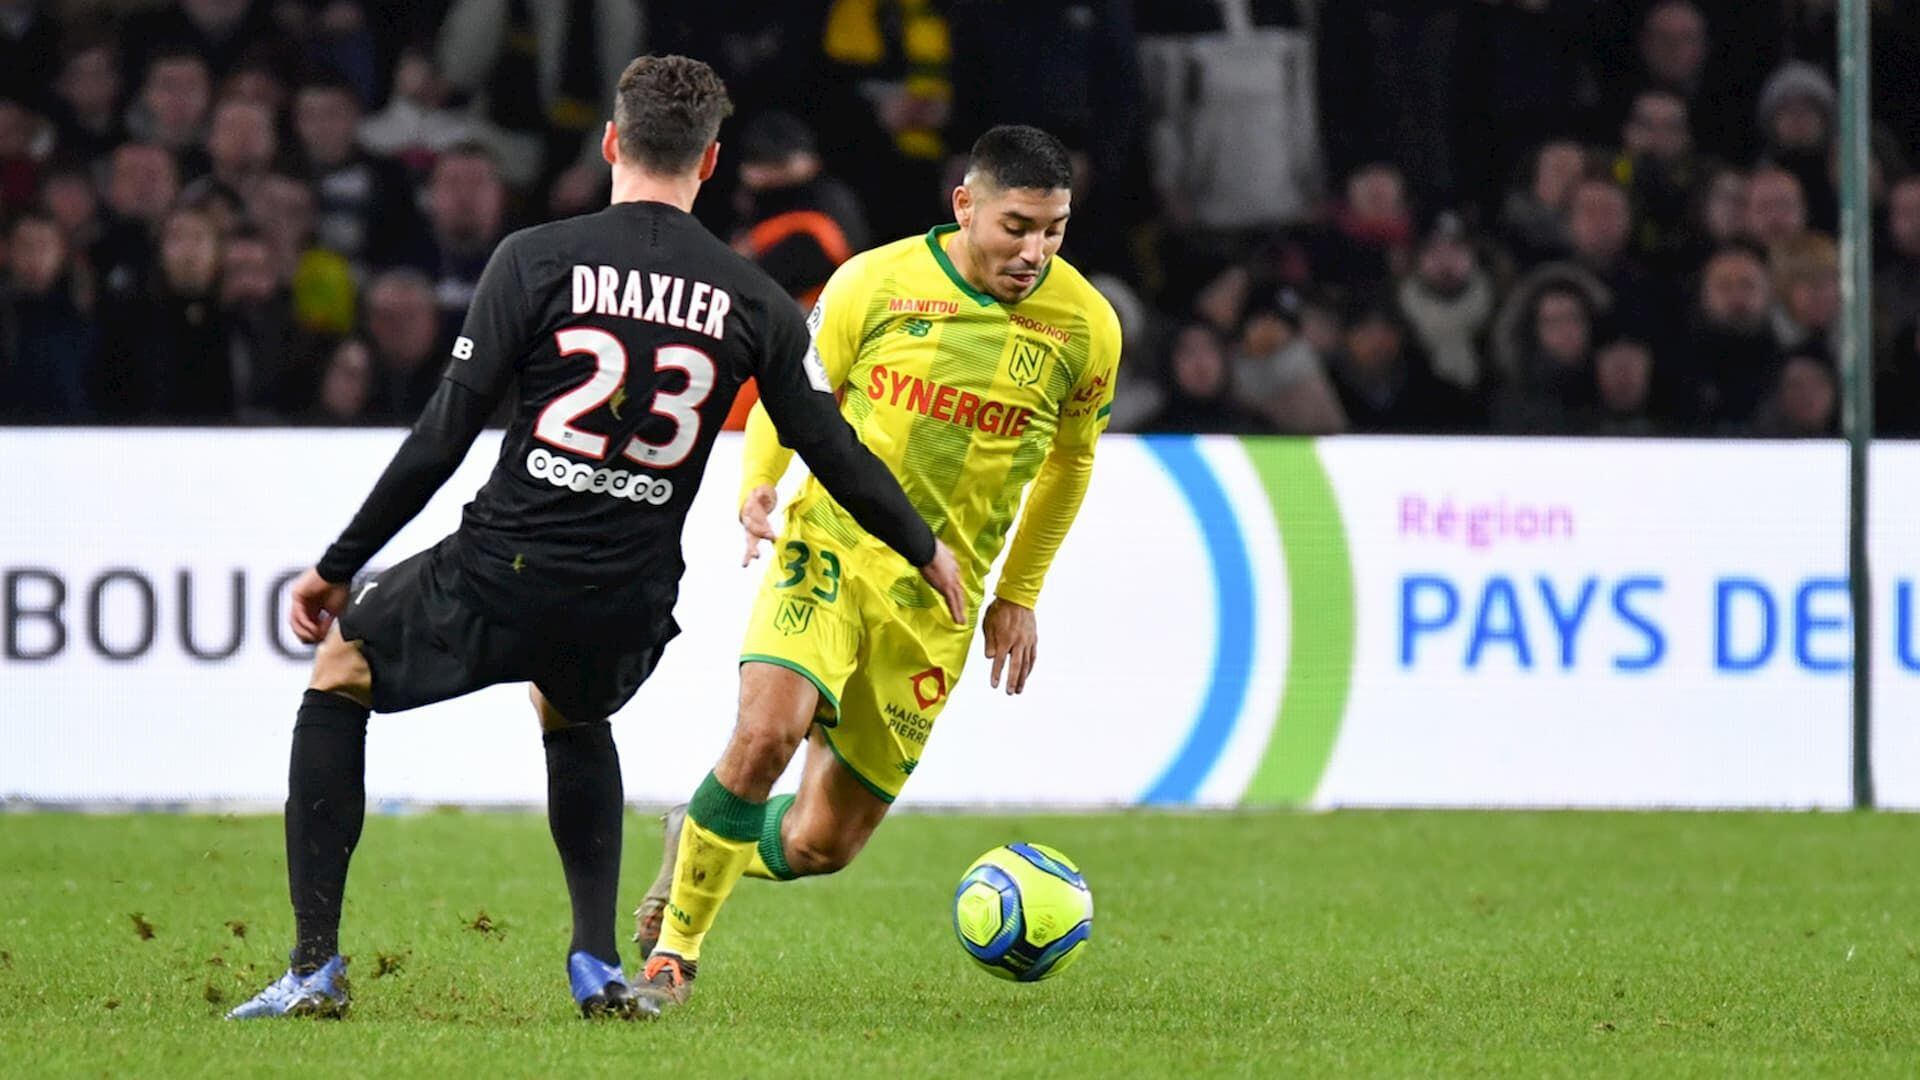 Percy Prado debutó con Nantes FC ante el PSG, en febrero del 2020. - Crédito: Difusión